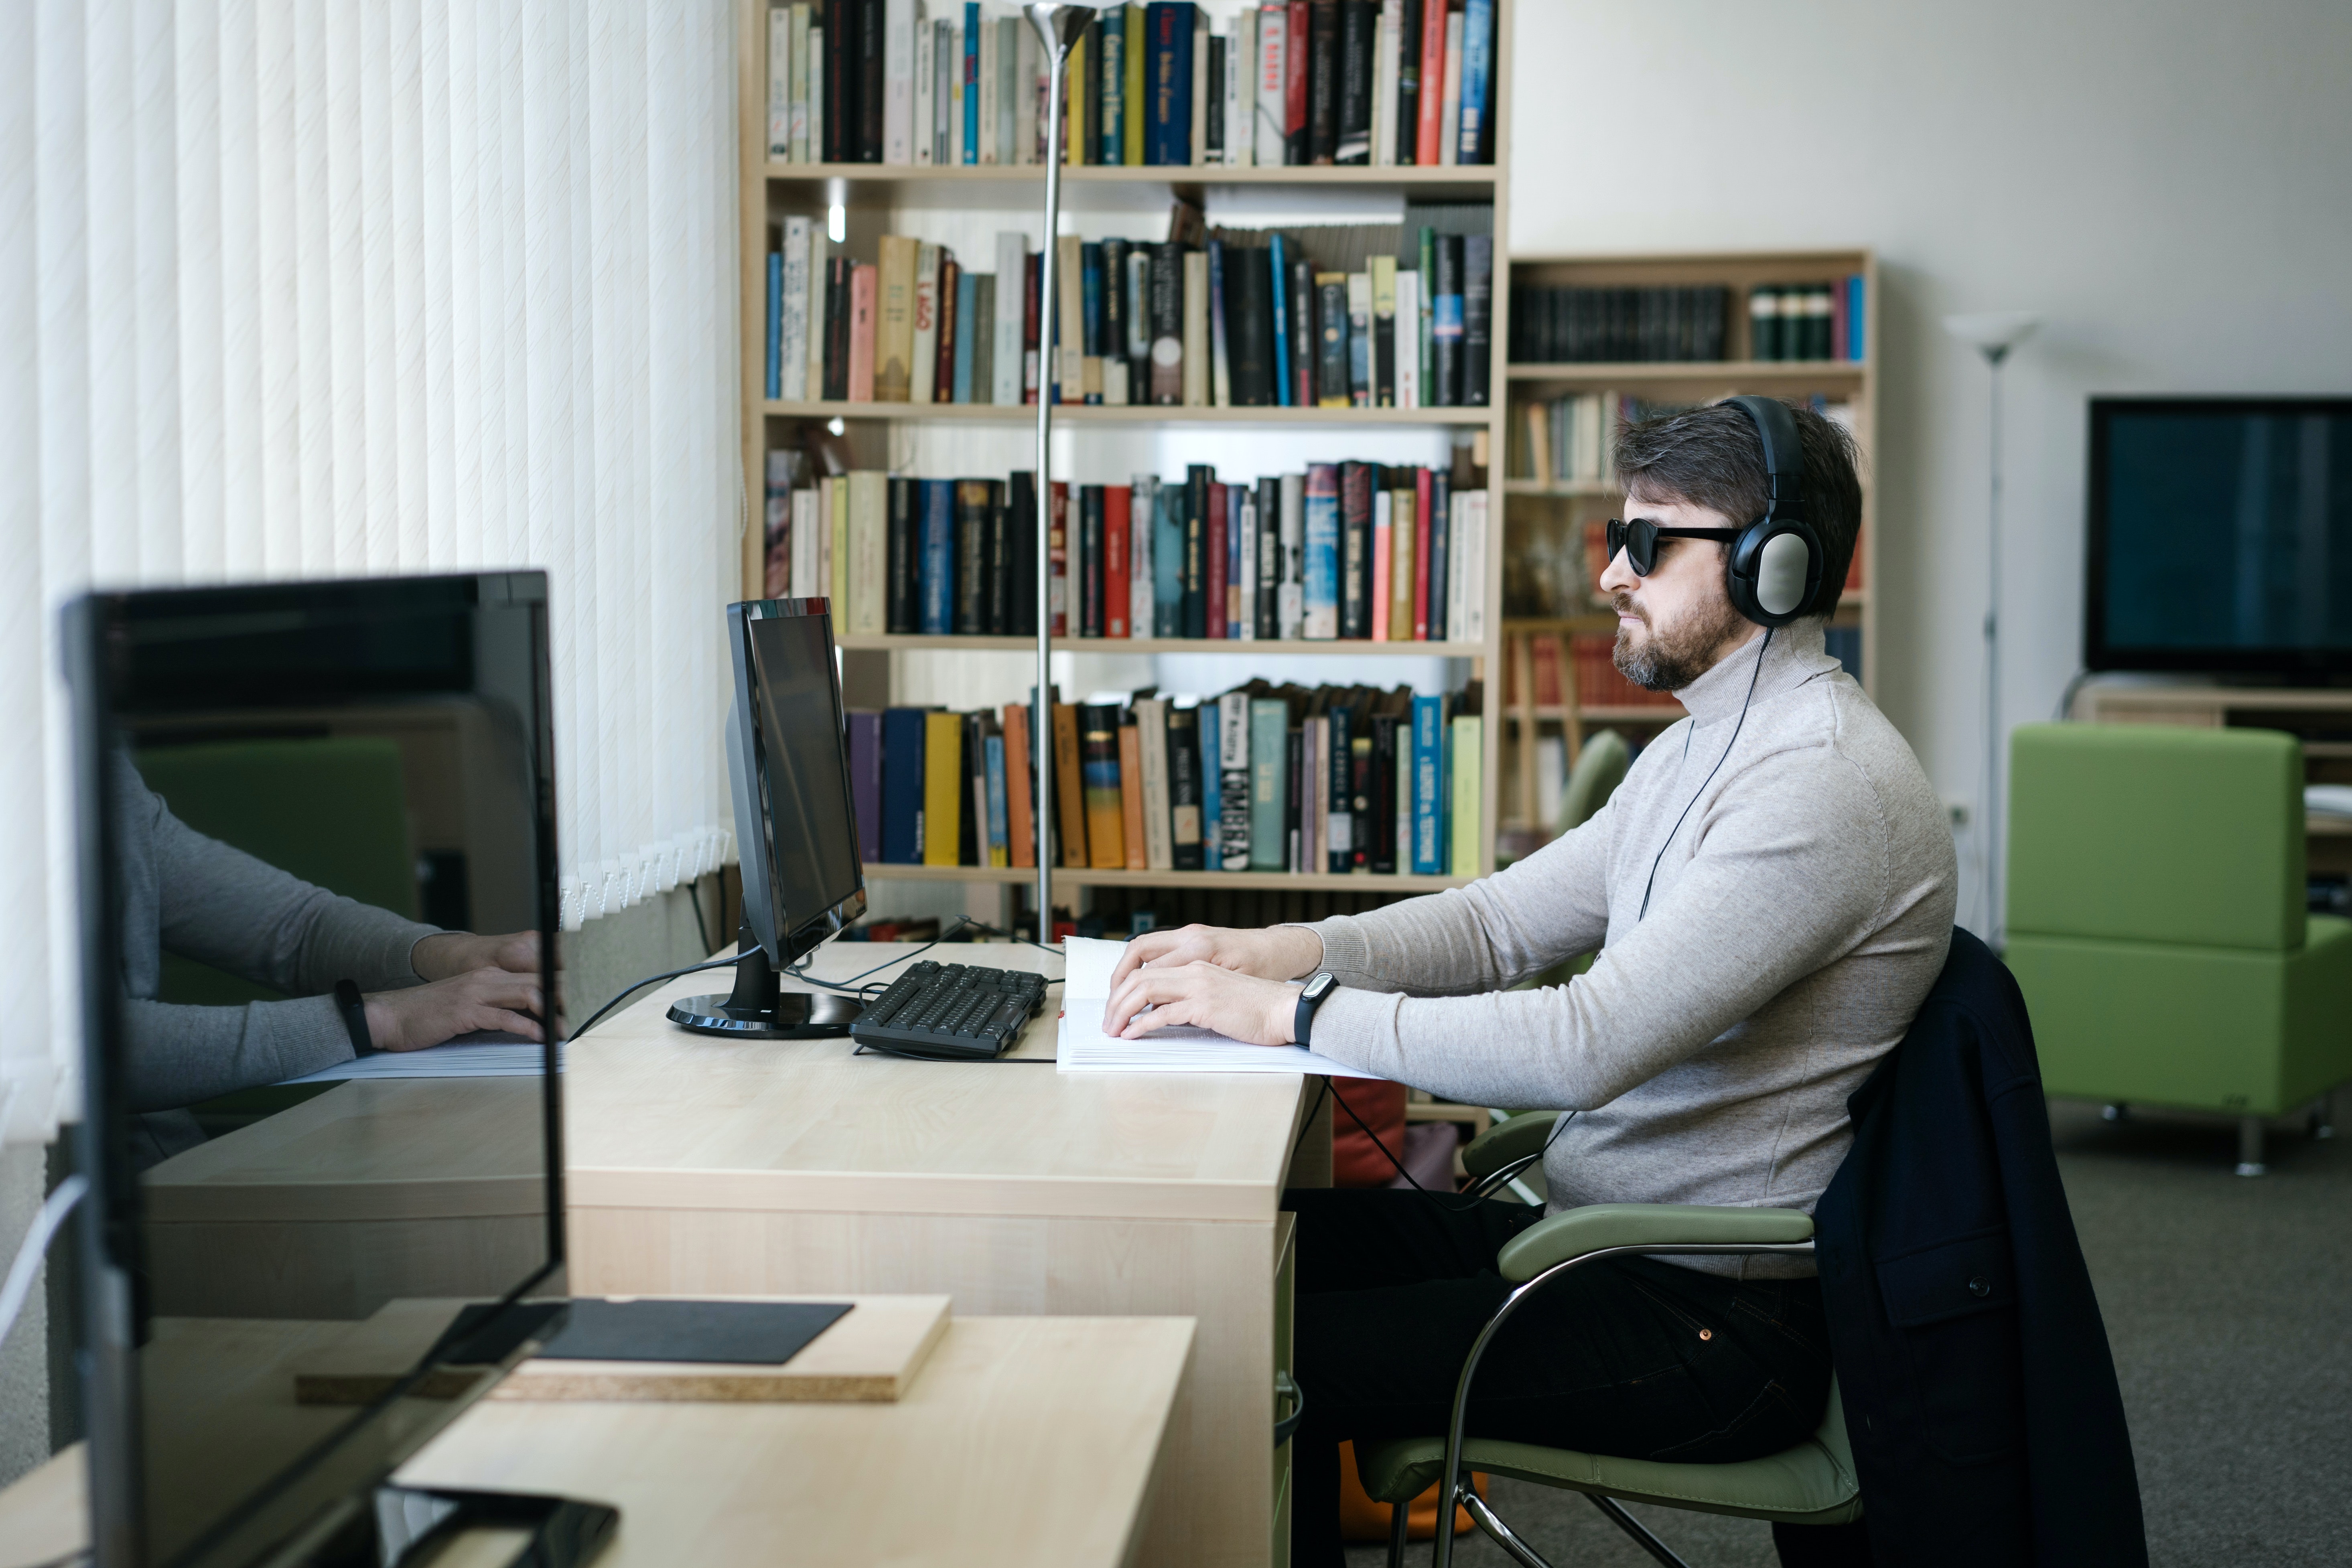 Un homme malvoyant portant un pull et des écouteurs, assis devant un ordinateur dans une bibliothèque, lit un livre en braille.